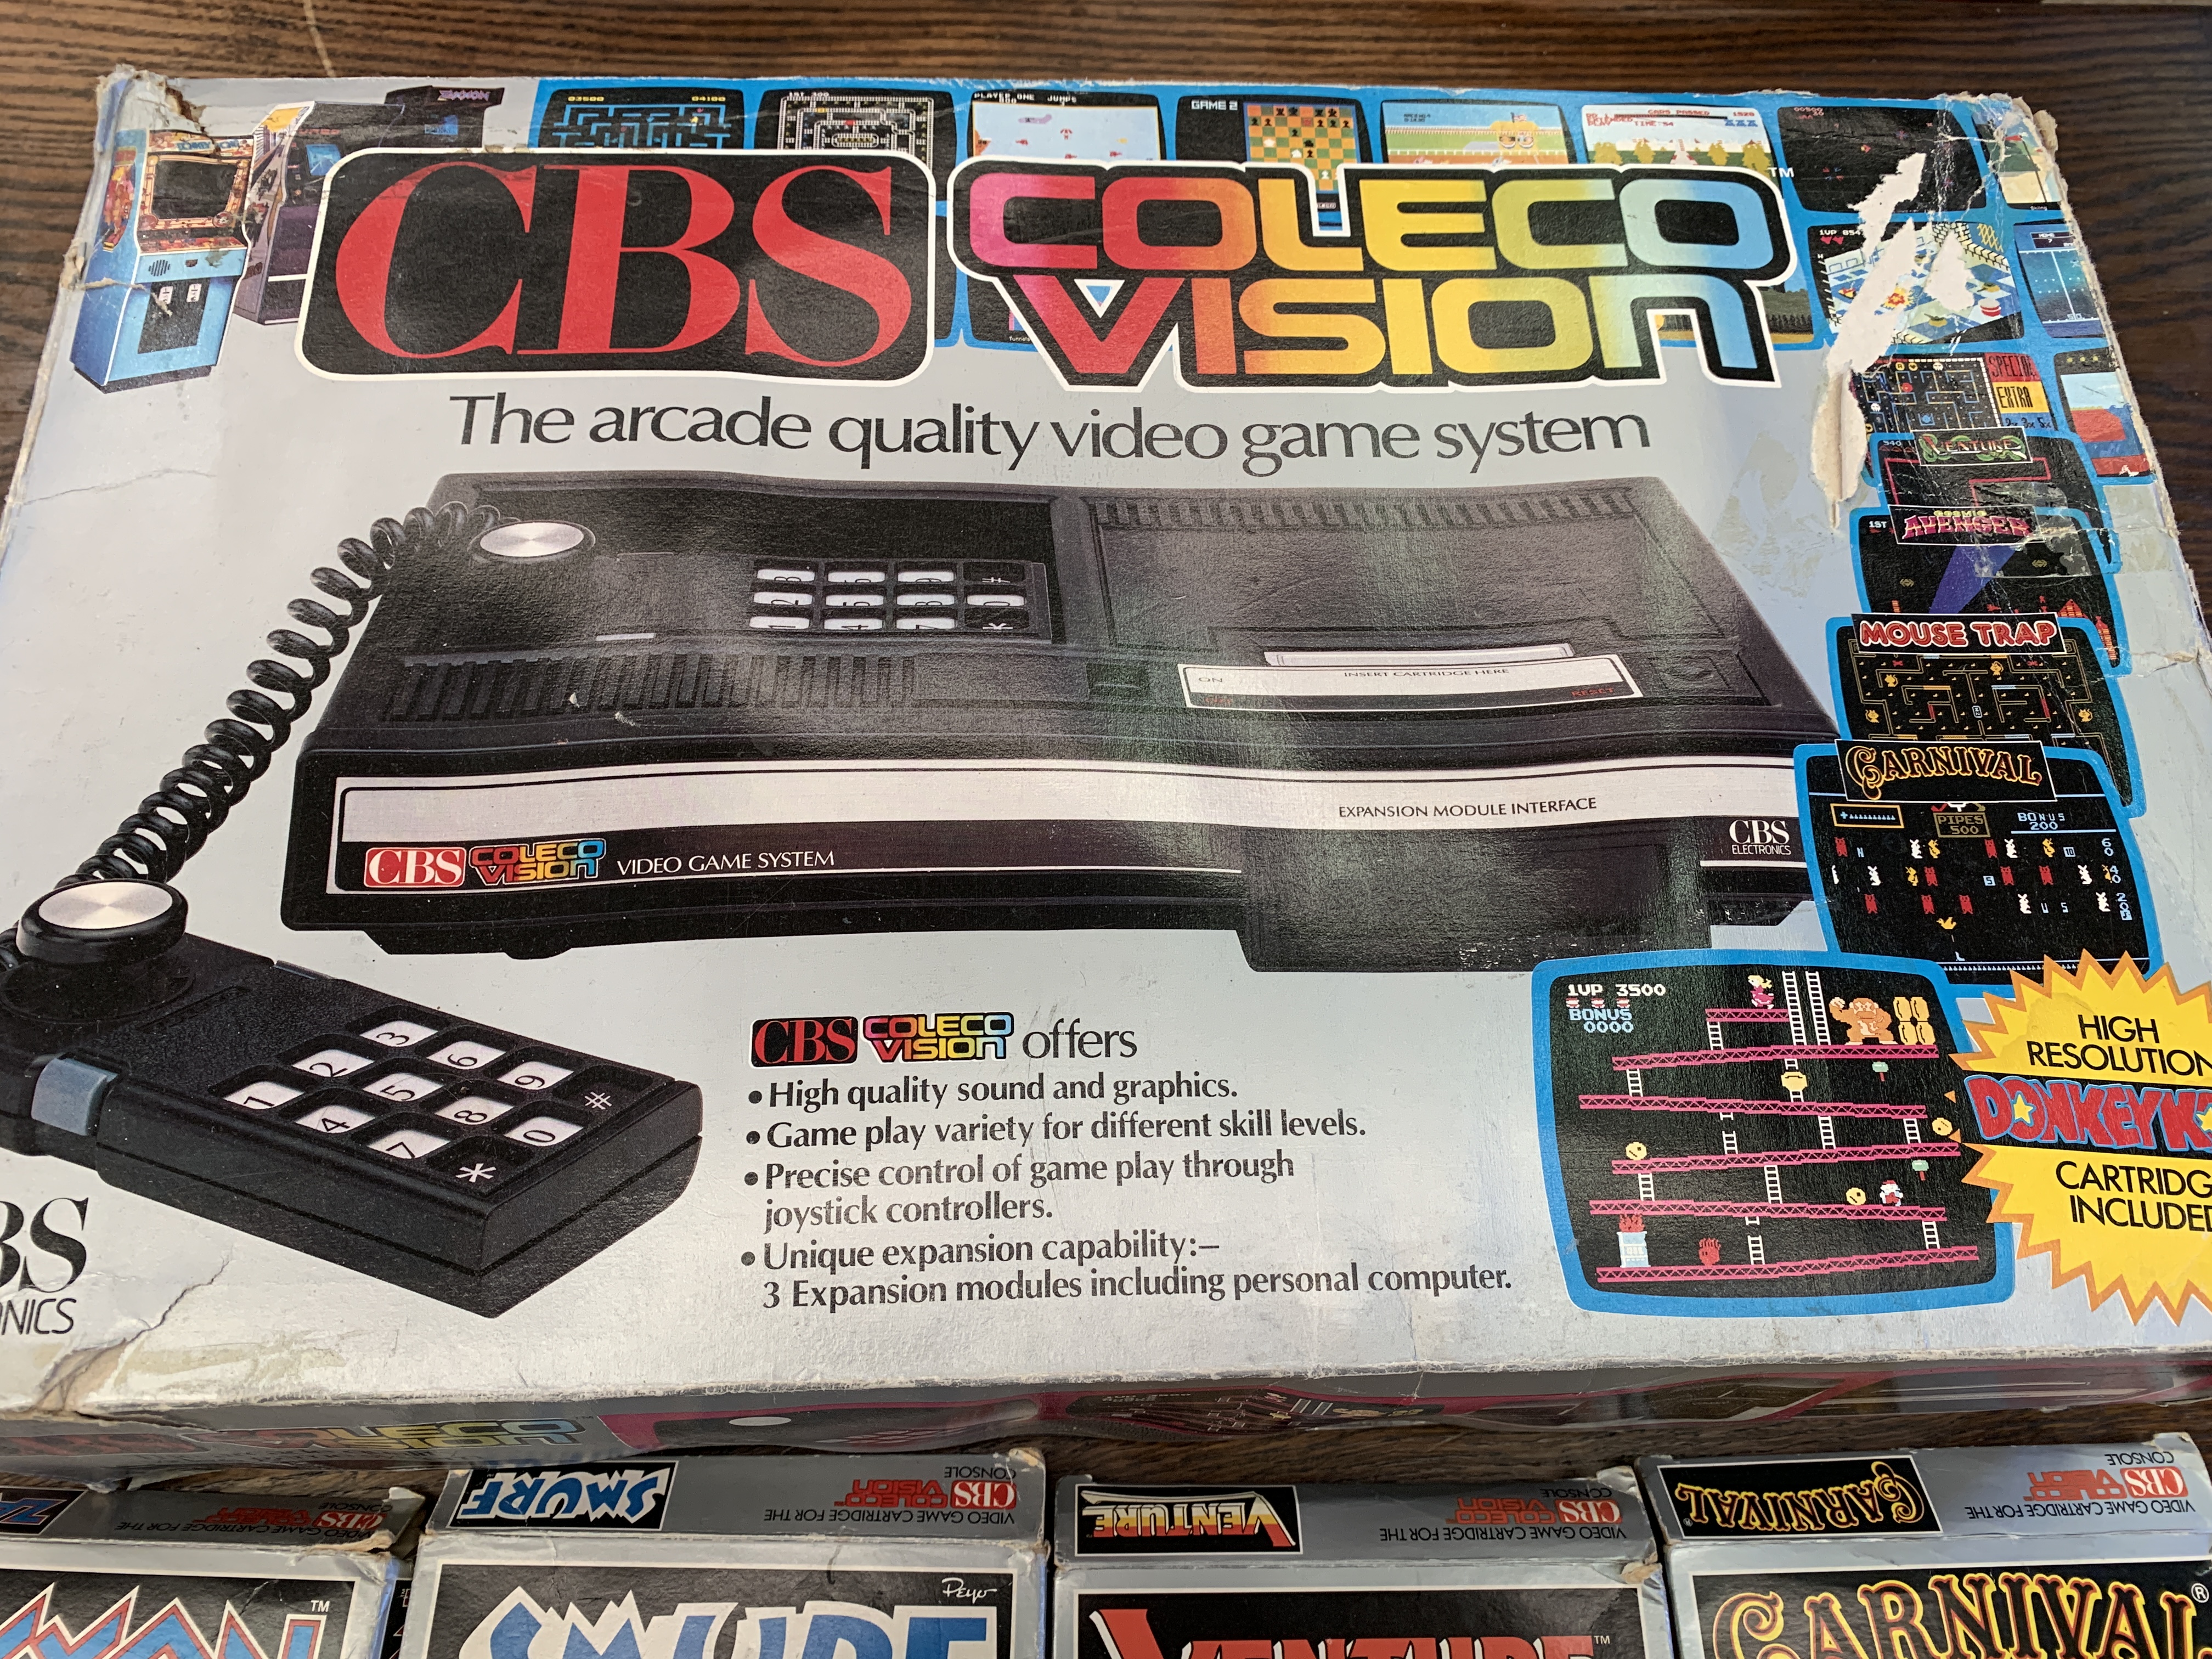 Retrovision games Colecovision games console in original box